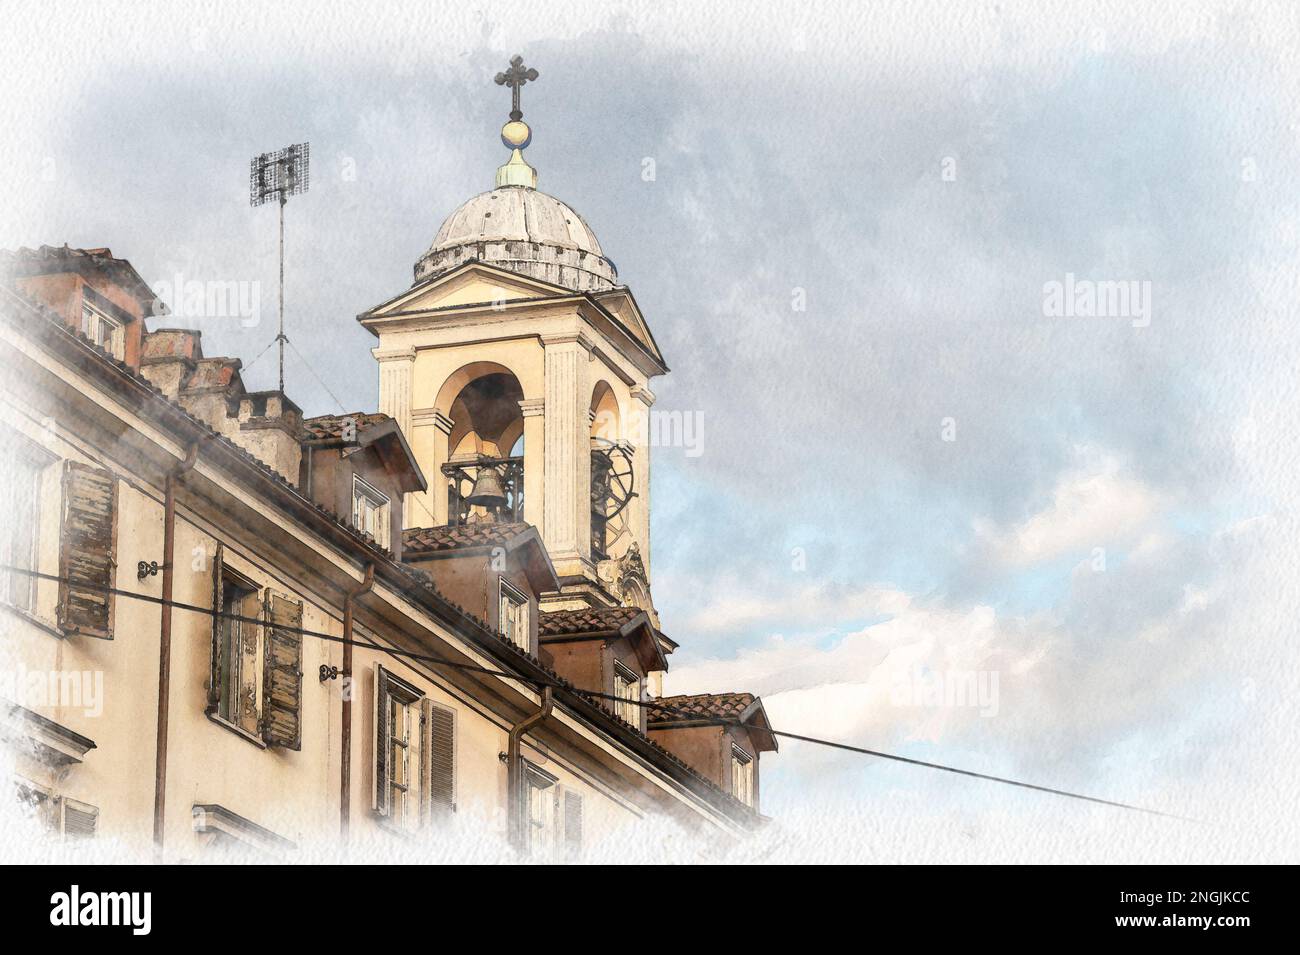 Italia, Torino. Panorama urbano da piazza Gran Madre di Dio, campanile con orologio. Monte dei Cappuccini Foto Stock